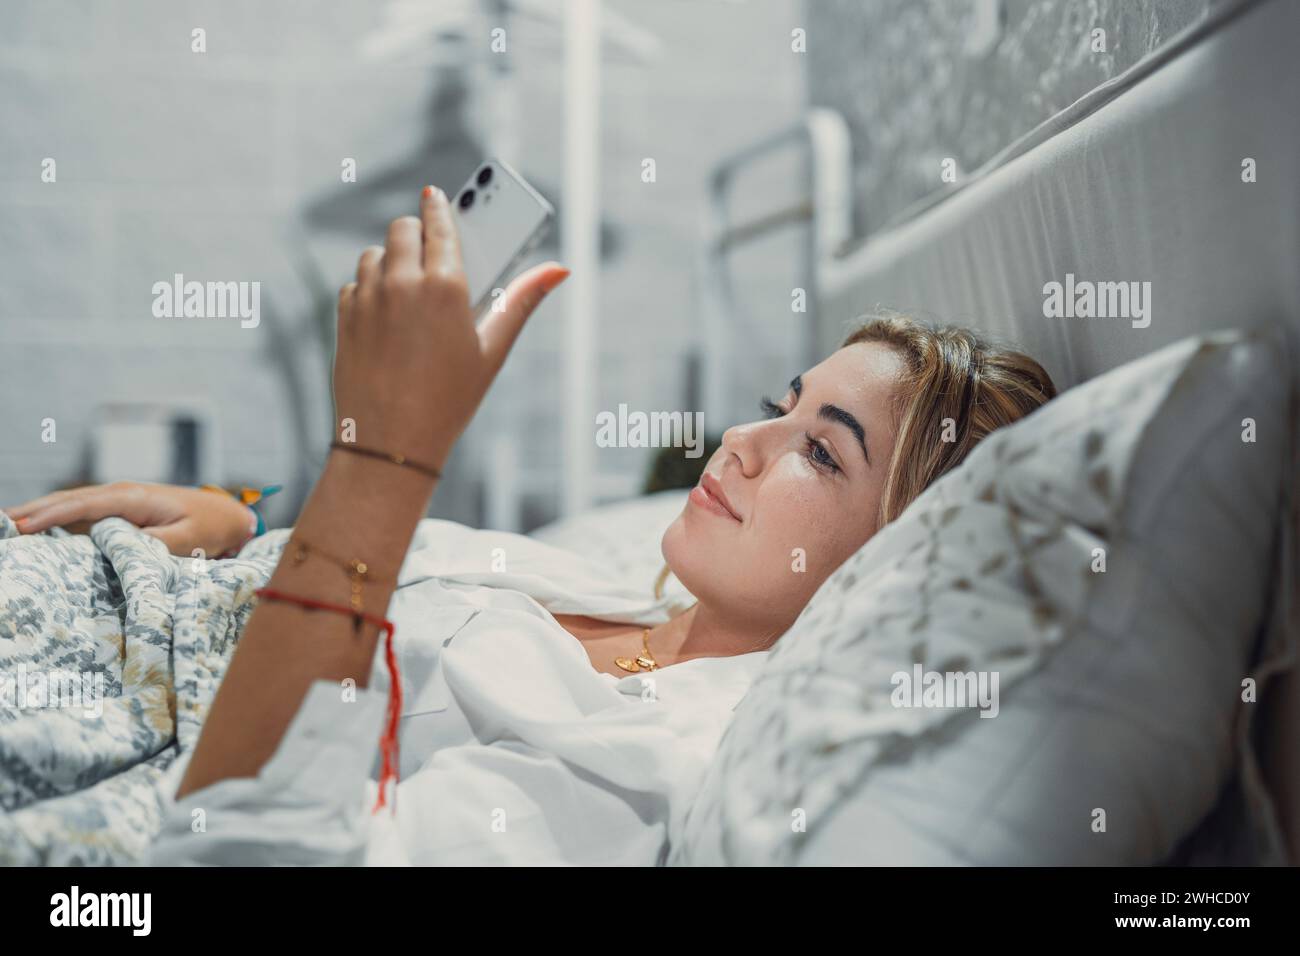 Dipendenza da gadget. Calma sorridente giovane donna o adolescente sdraiata su un comodo letto tenendo il cellulare in mano guardando lo schermo chattando controllando l'account del social network prima di addormentarsi o dopo il risveglio Foto Stock